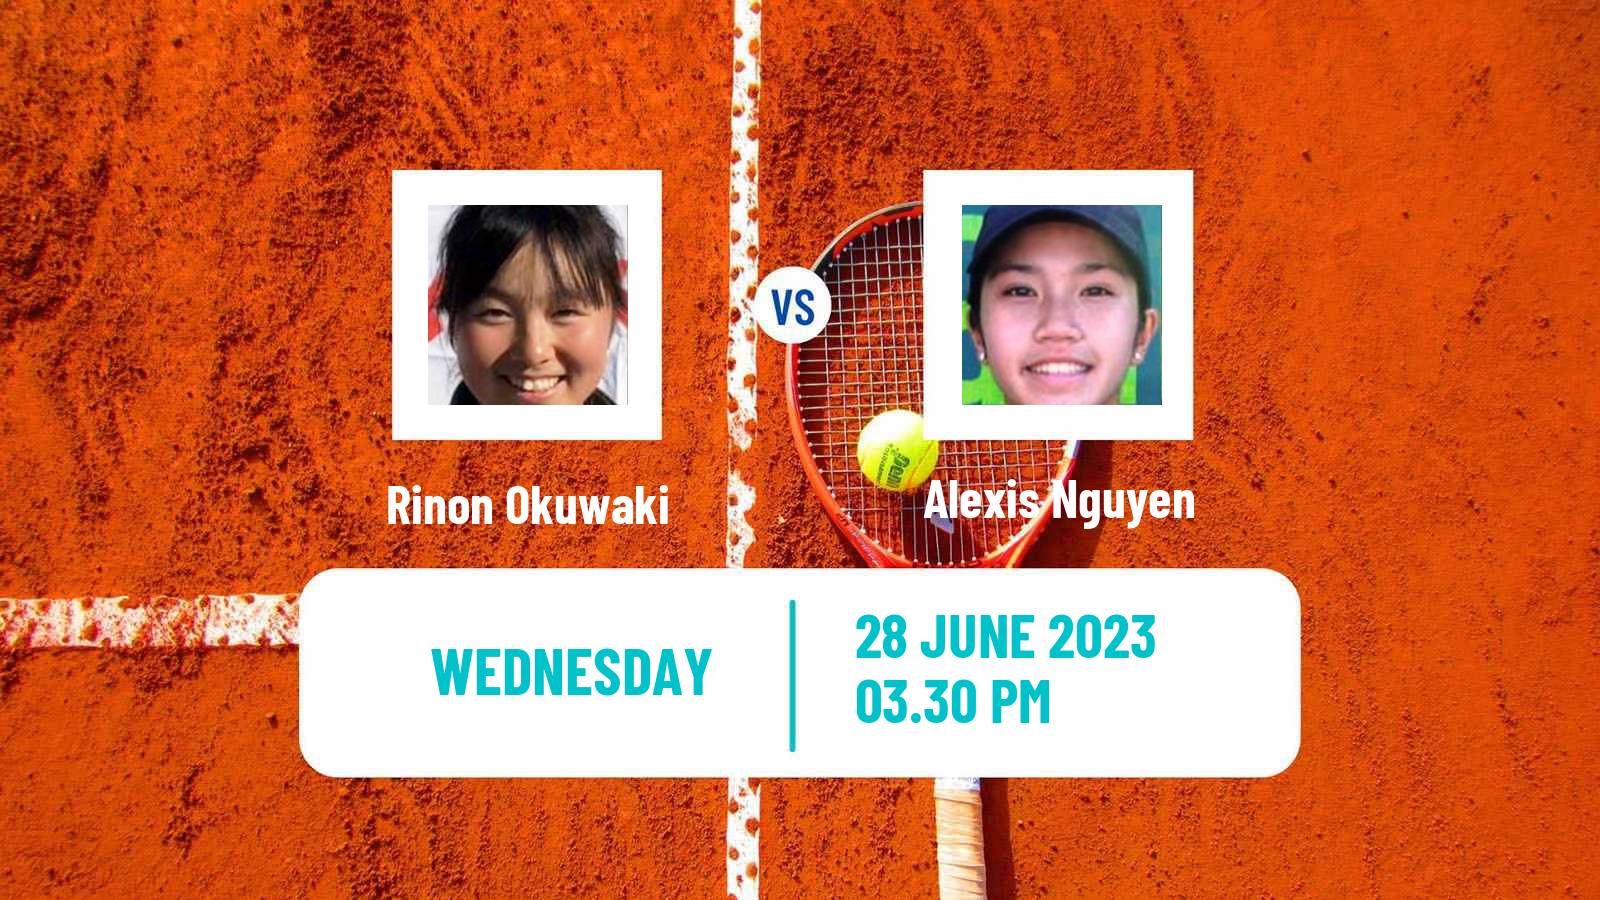 Tennis ITF W15 Irvine Ca Women Rinon Okuwaki - Alexis Nguyen